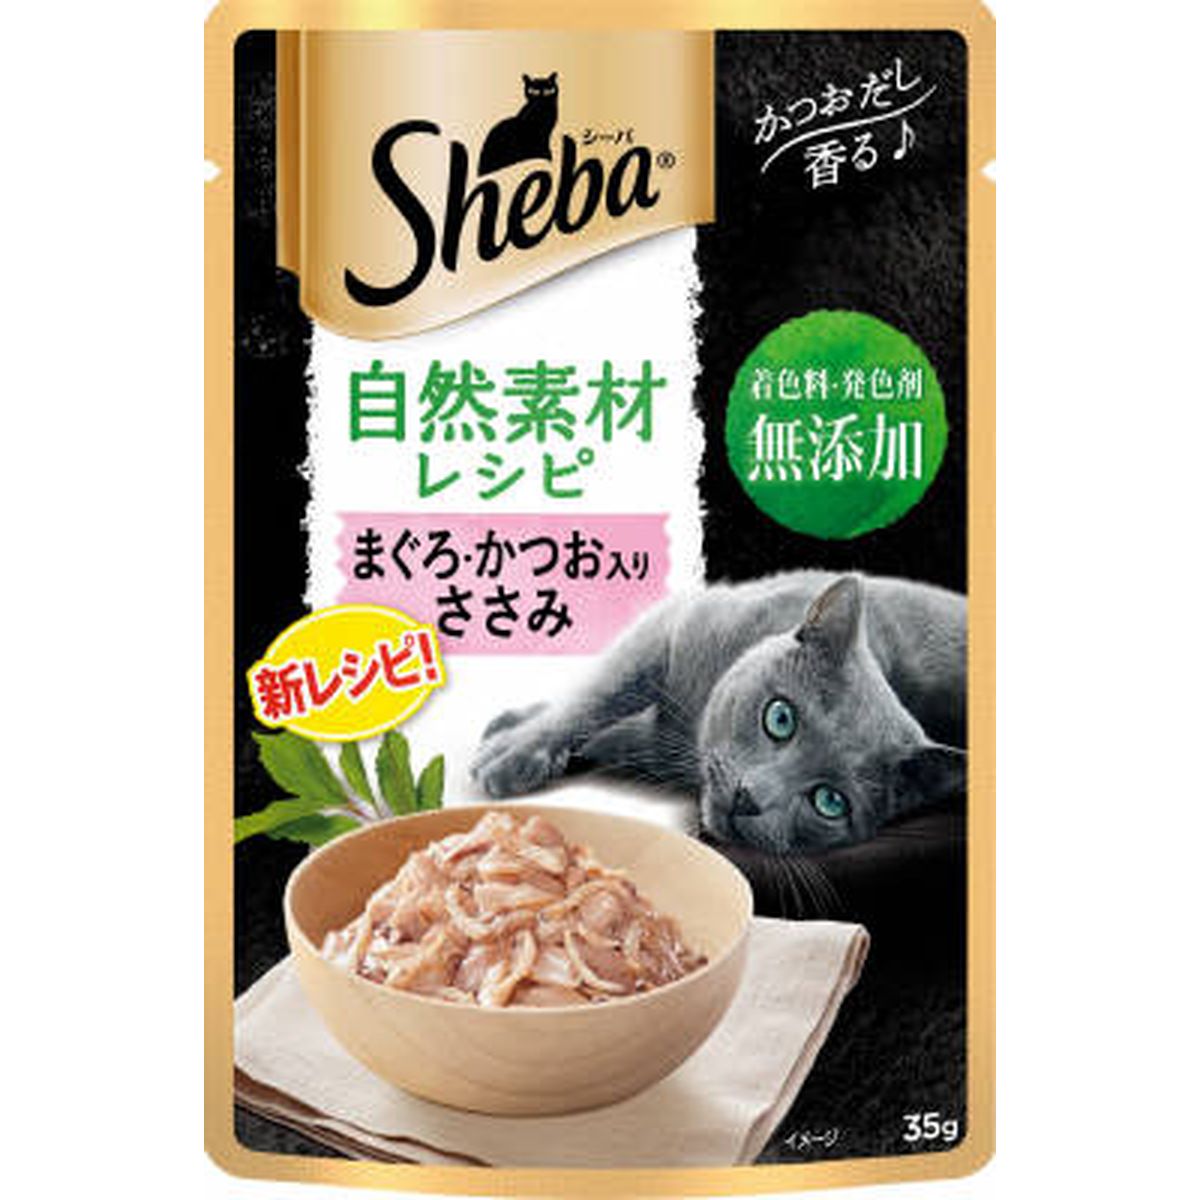 シーバ 自然素材レシピ マグロ･カツオ入リ ササミ 35g×96